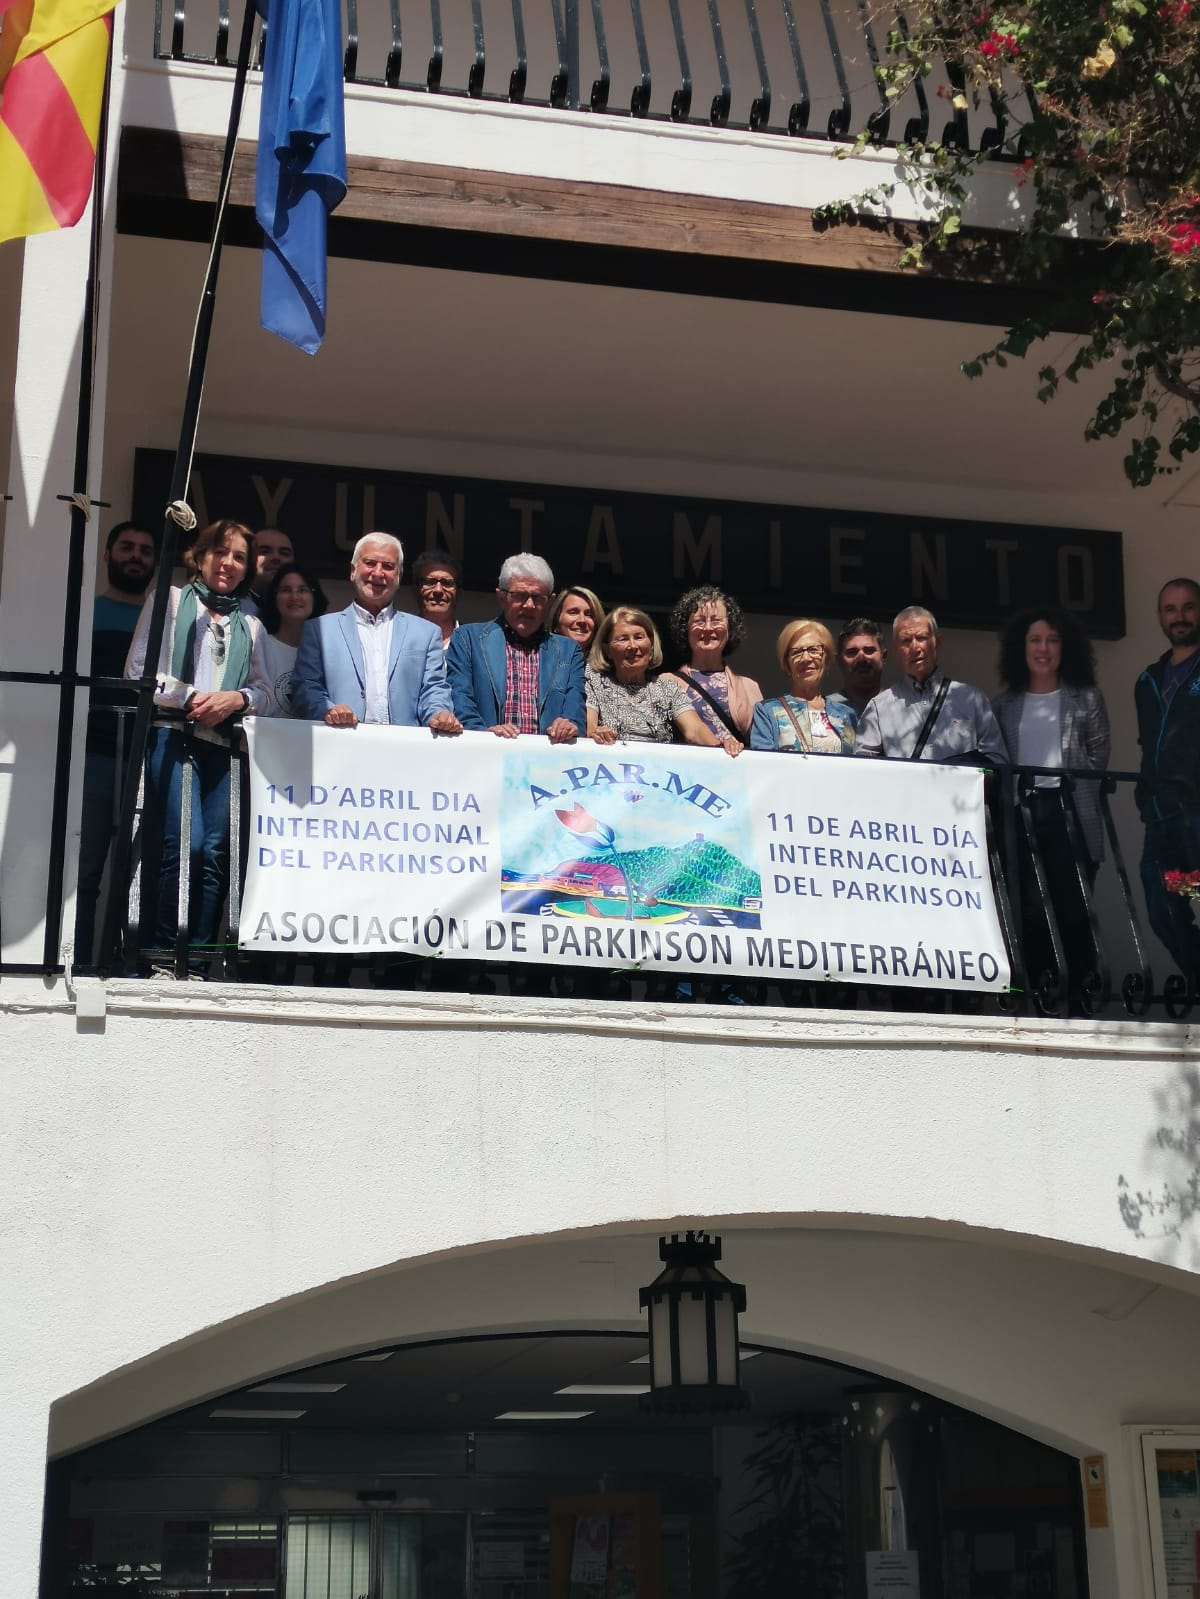 Altea commemora el Dia Internacional de Parkinson. L’Ajuntament i l’Associació de Parkinson Mediterrani han mostrat el seu suport a afectats i famílies penjant una pancarta reivindicativa als balcons del Consistori.